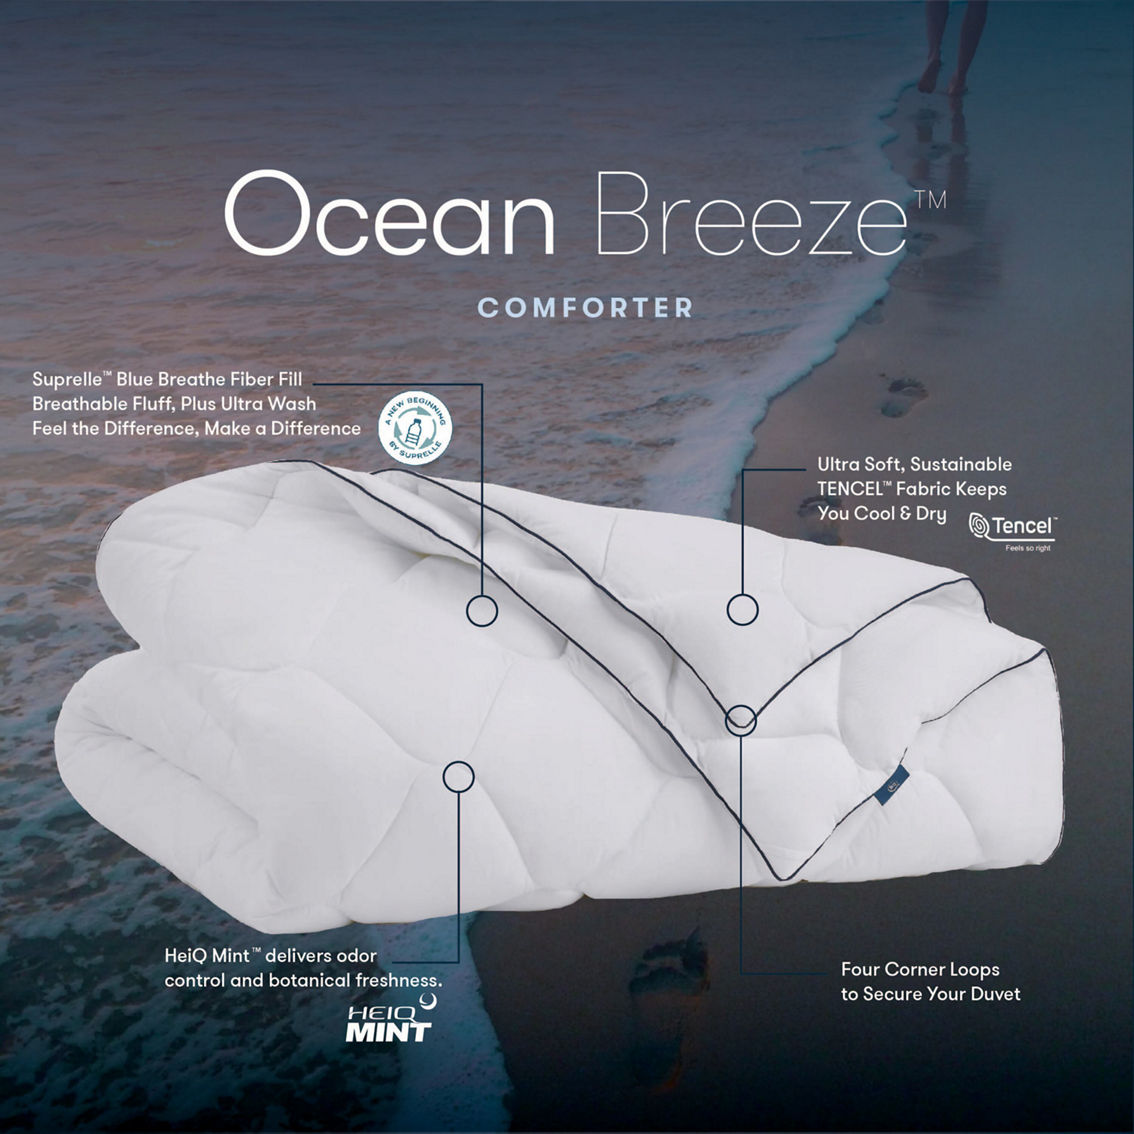 Serta Ocean Breeze Down Alternative Comforter - Image 5 of 7